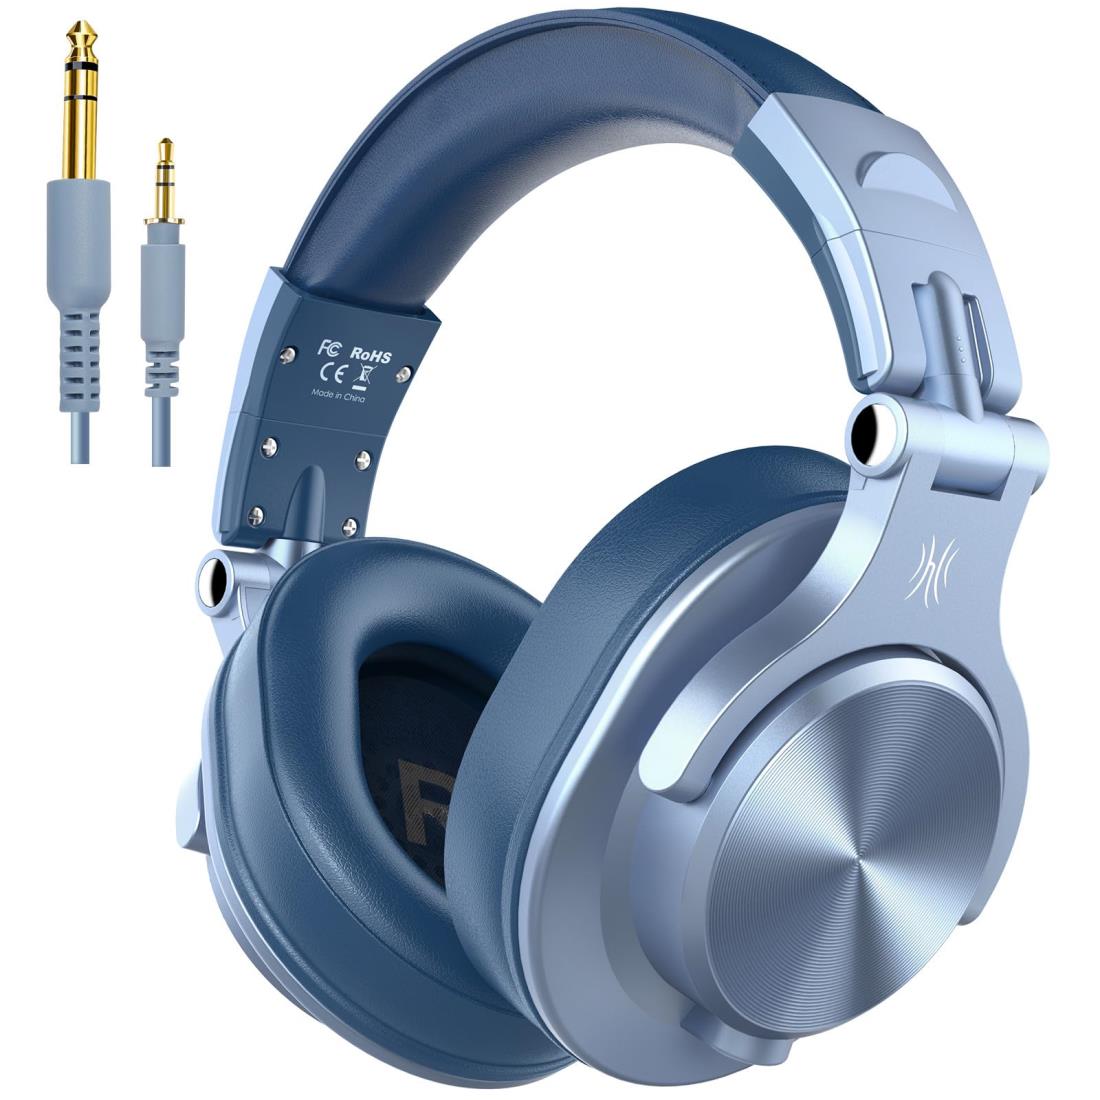 OneOdio A70 ワイヤレスヘッドホン 72時間再生 オーバーイヤーヘッドホン Bluetooth 5.2 低音強化 マイク付き 有線 無線 両用 モニターヘッドホン 密閉型 DJ用/音楽鑑賞/楽器練習